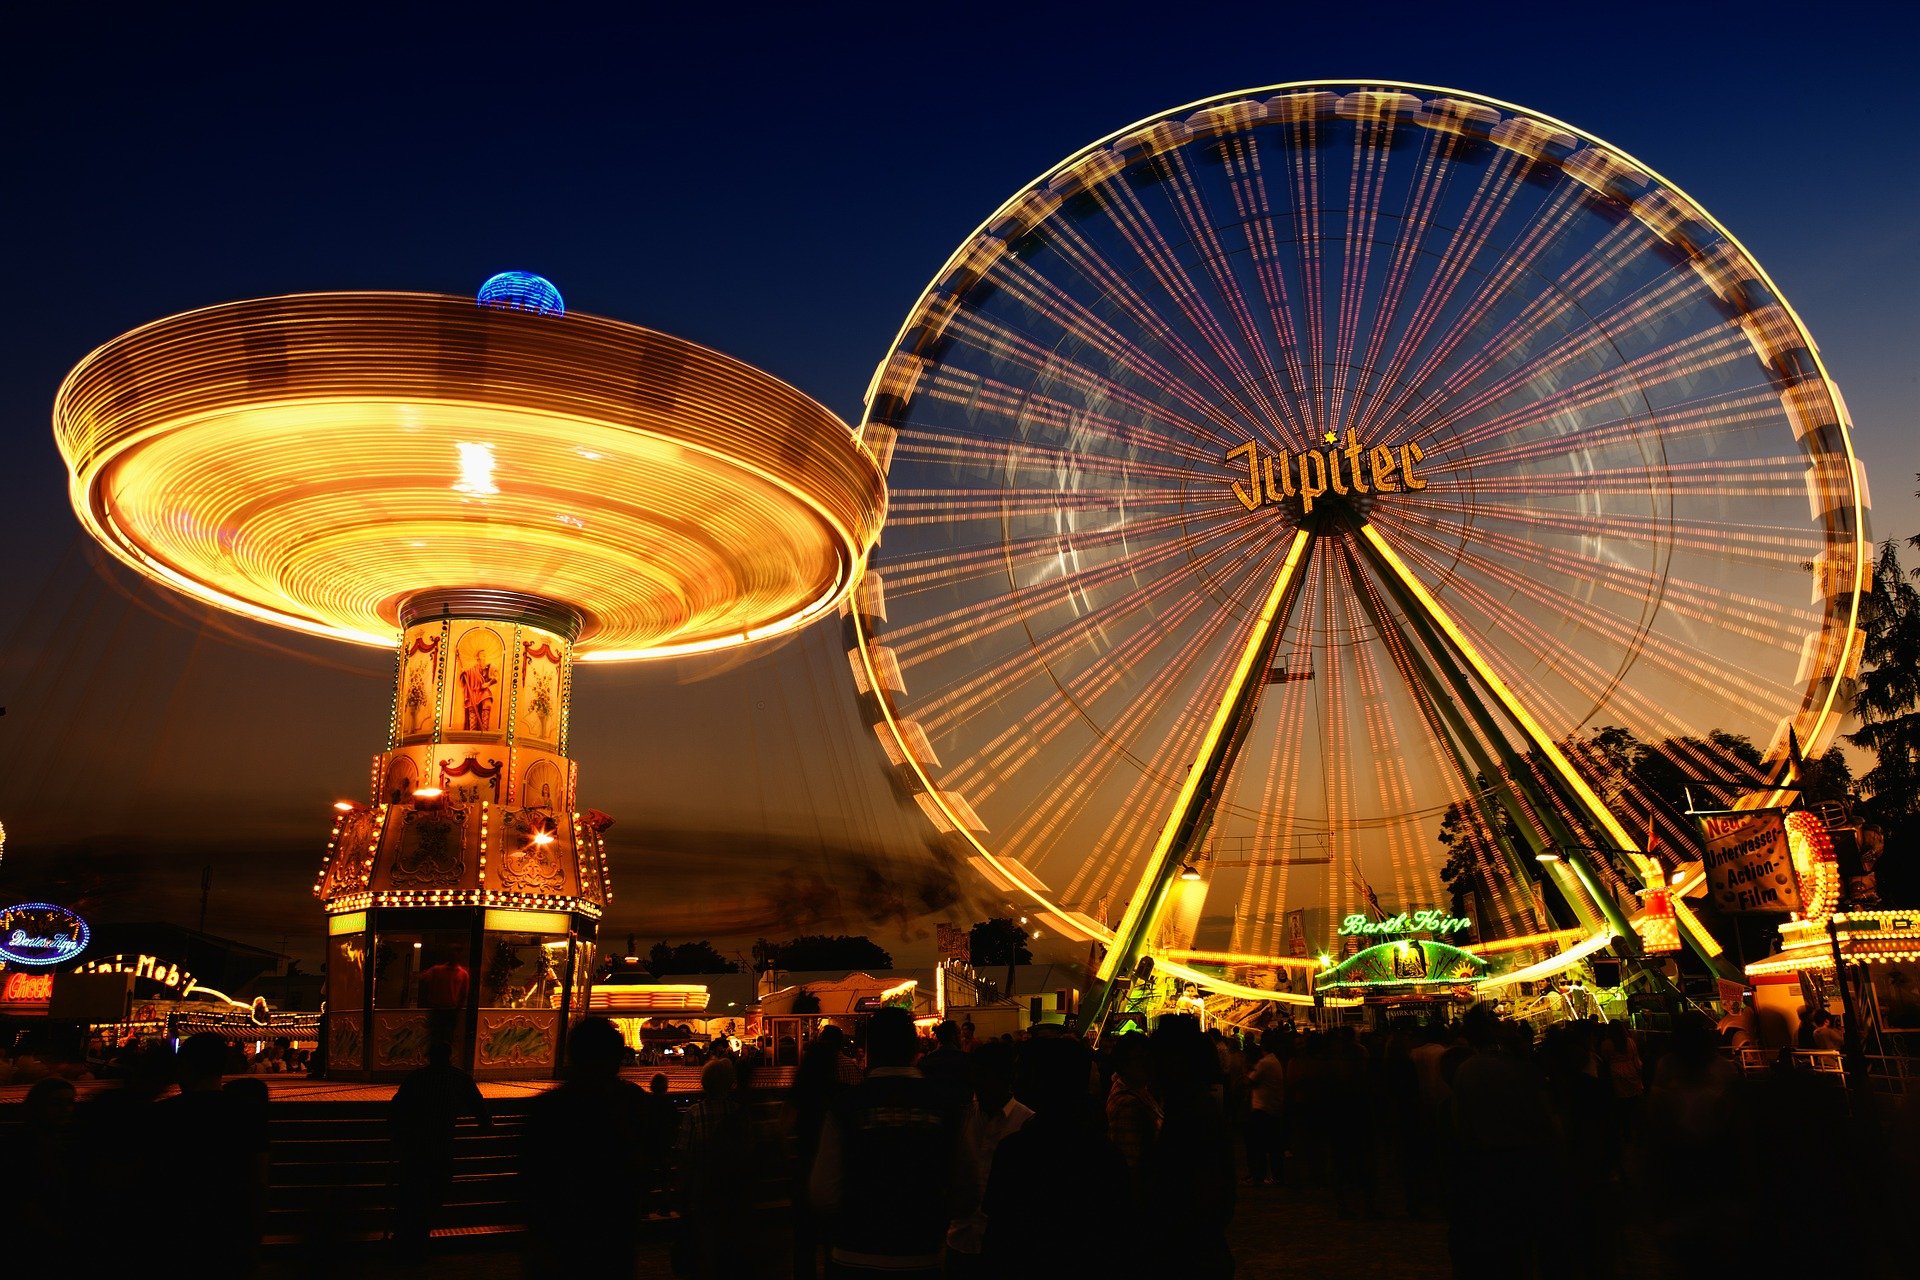 A theme park lit up at night | Photo: Pixabay/Frank Winkler